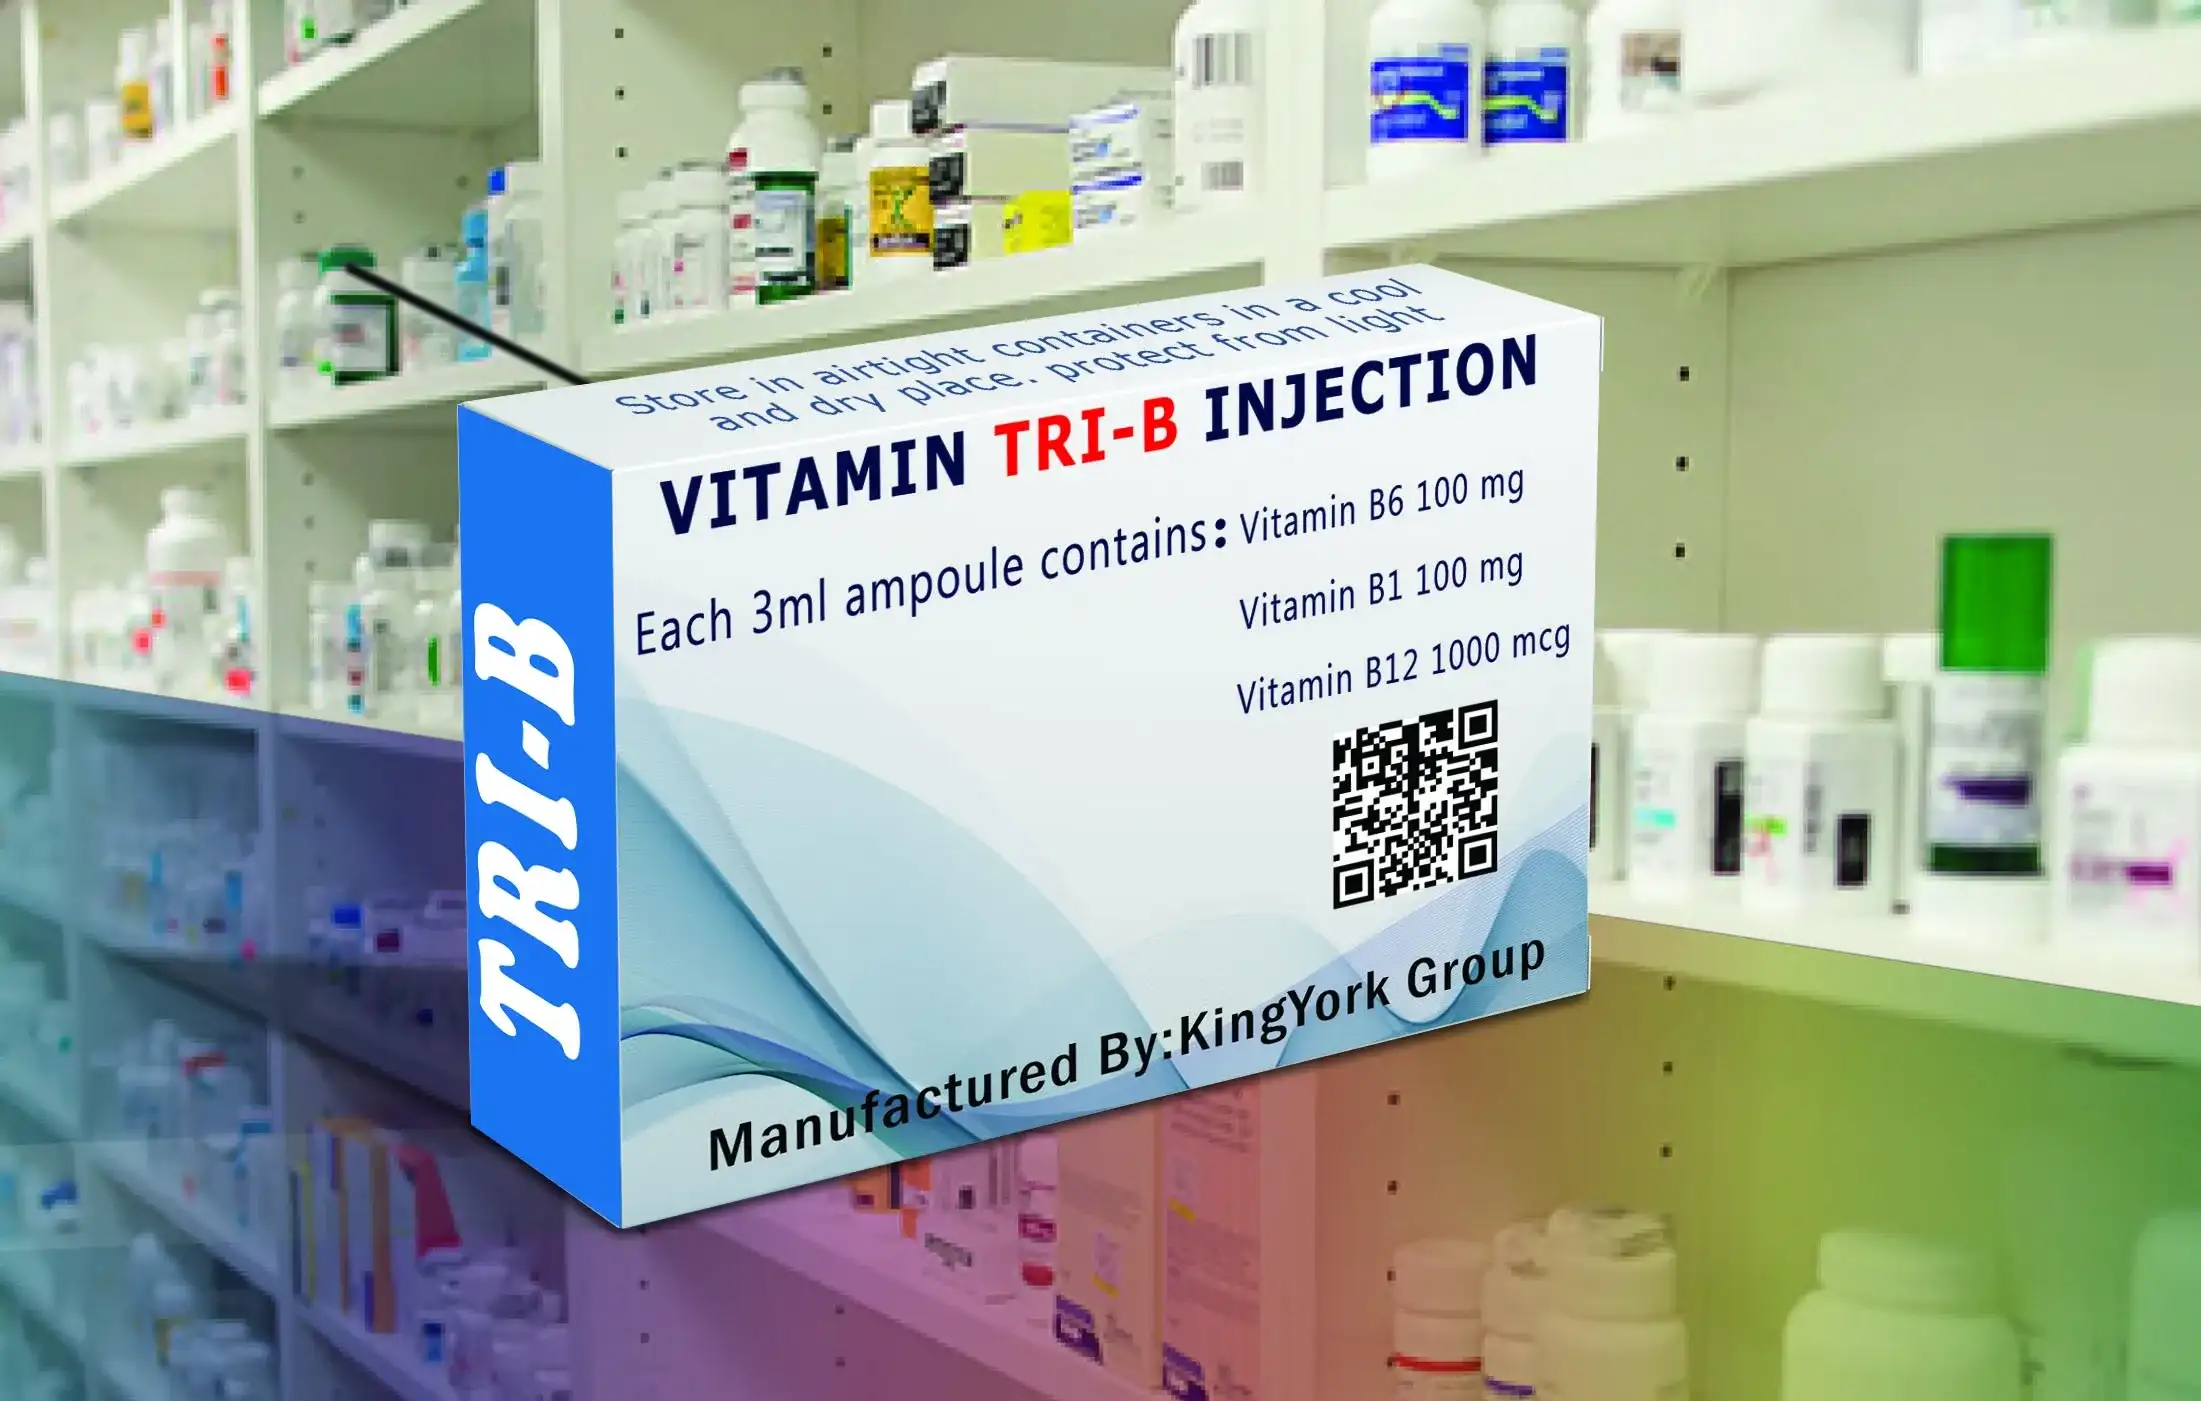 'Vitamin Tri B injection', 'Vitamin Tri B ampoule', 'Vitamine', 'Vitamin Tri B'